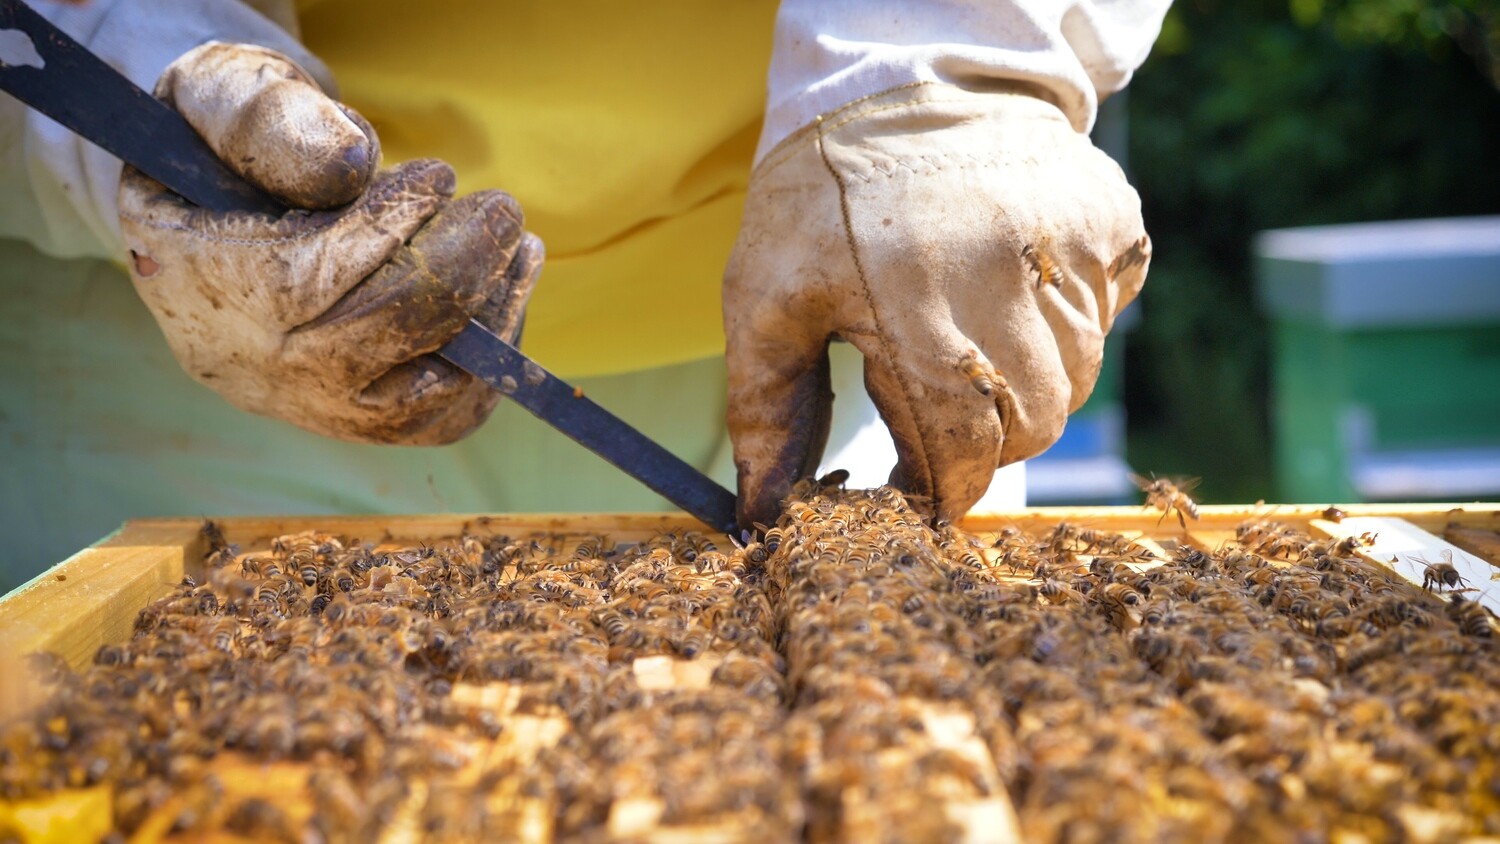 Formation en apiculture niveau débutant samedi 22 mai 2021 10h00